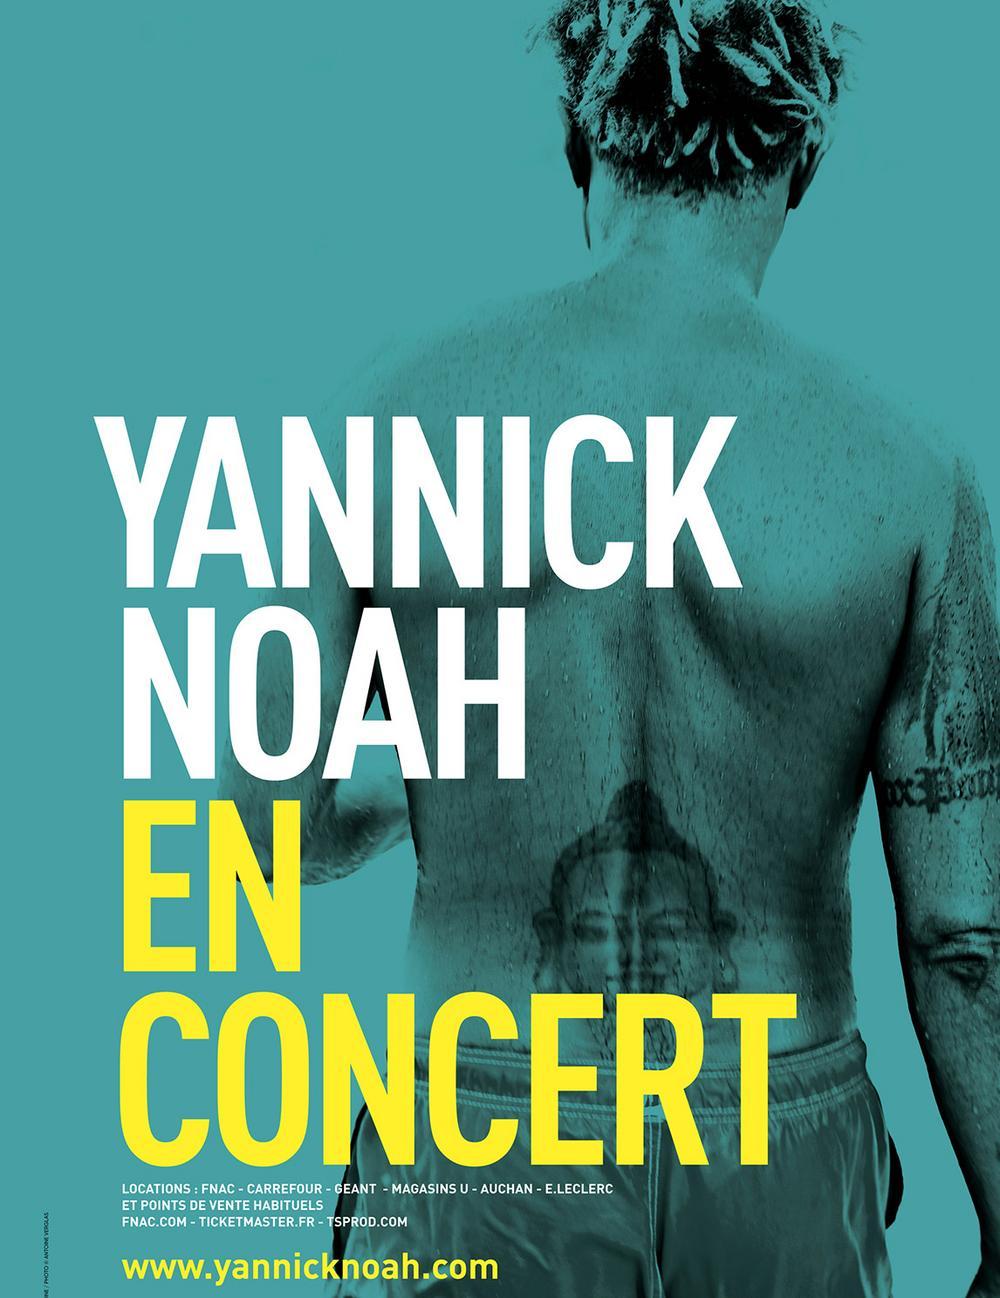 yannick noah concert tours